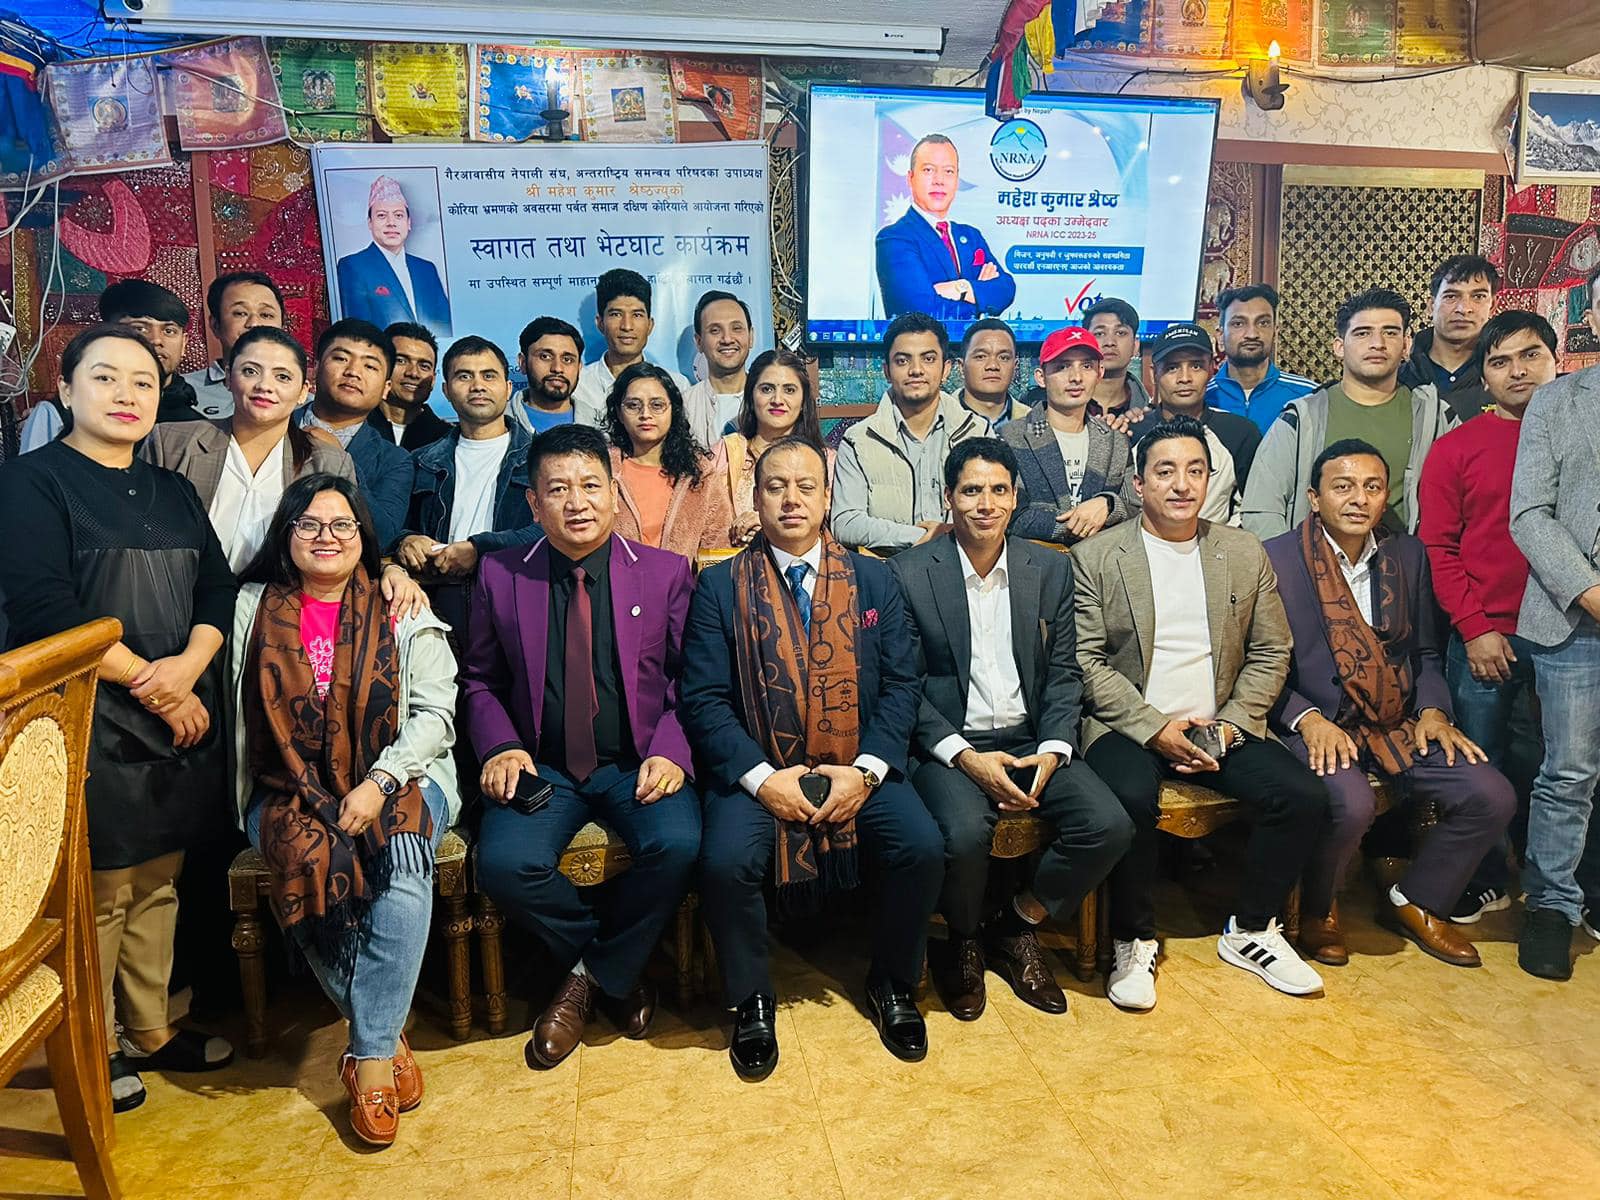 काठमाडौंमा एनआरएनए महाधिवेशनको चहलपहल बढ्यो, एकताको मुद्दाले महेशको पक्षमा समर्थन बढ्दै